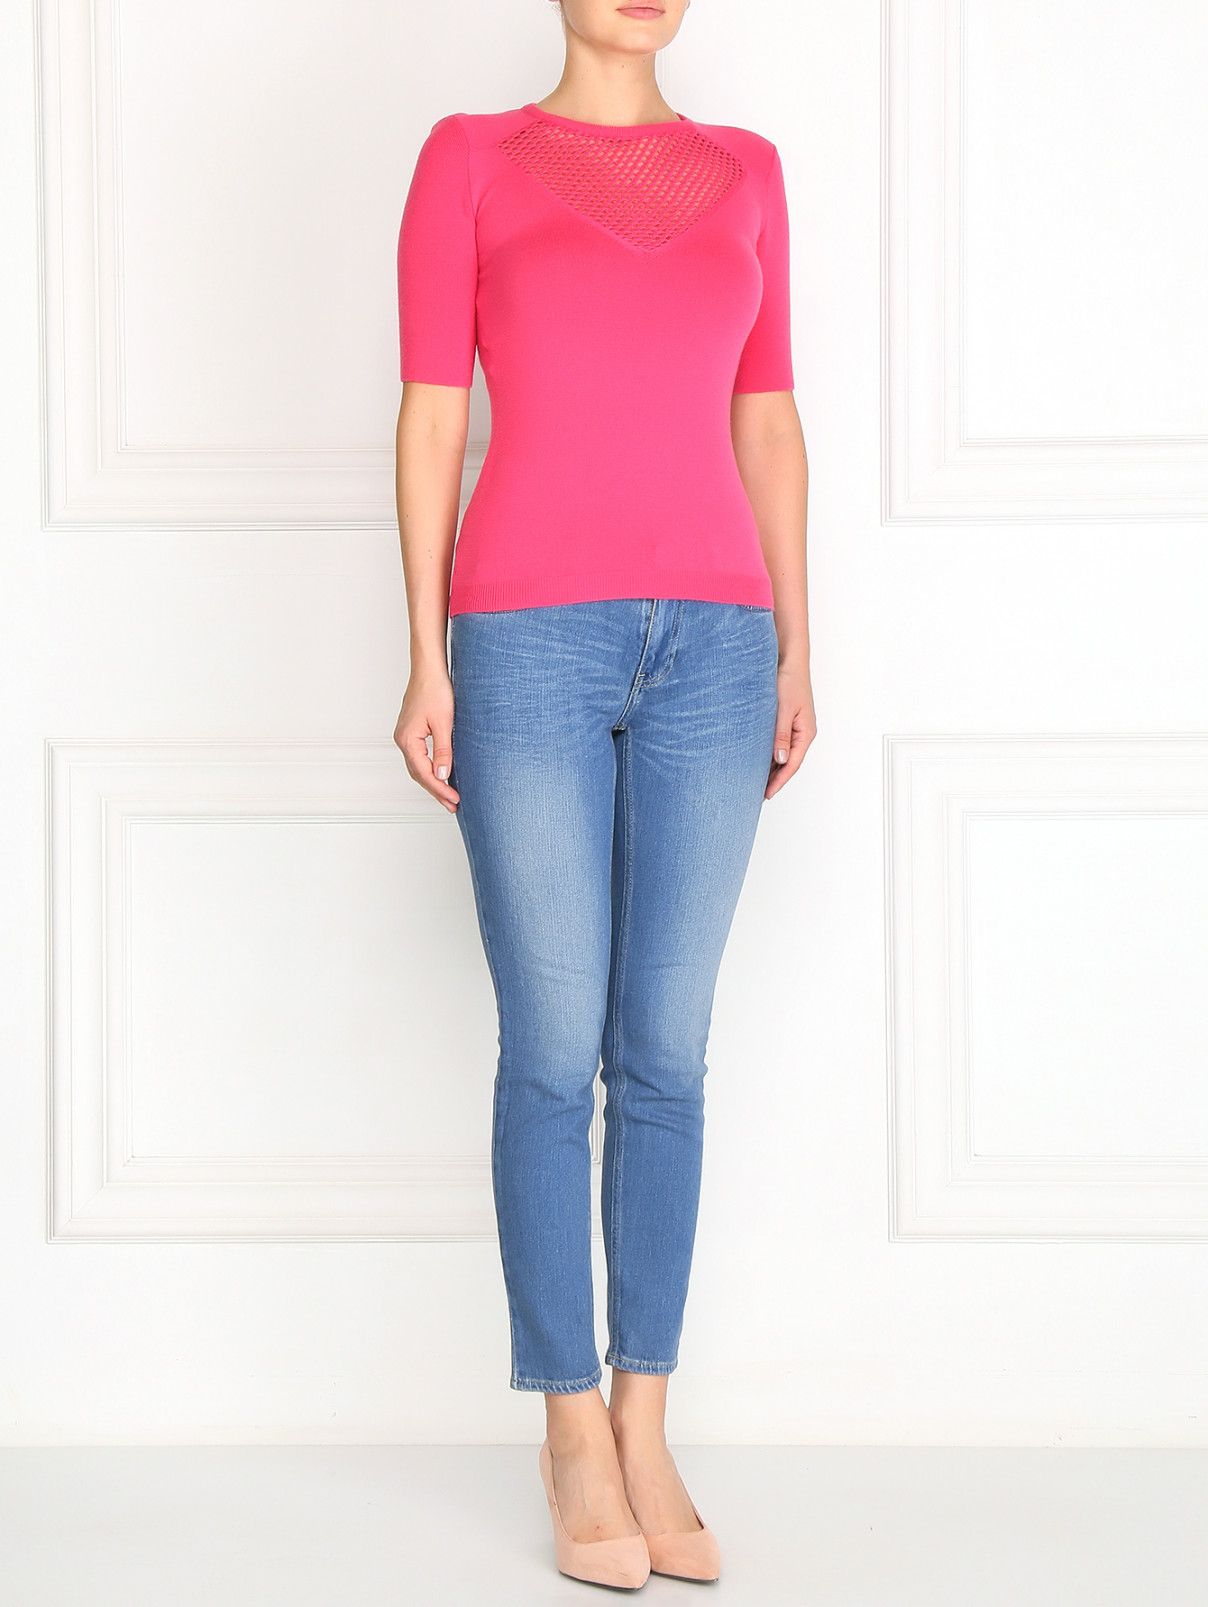 Джемпер из шерсти с короткими рукавами Moschino Cheap&Chic  –  Модель Общий вид  – Цвет:  Розовый